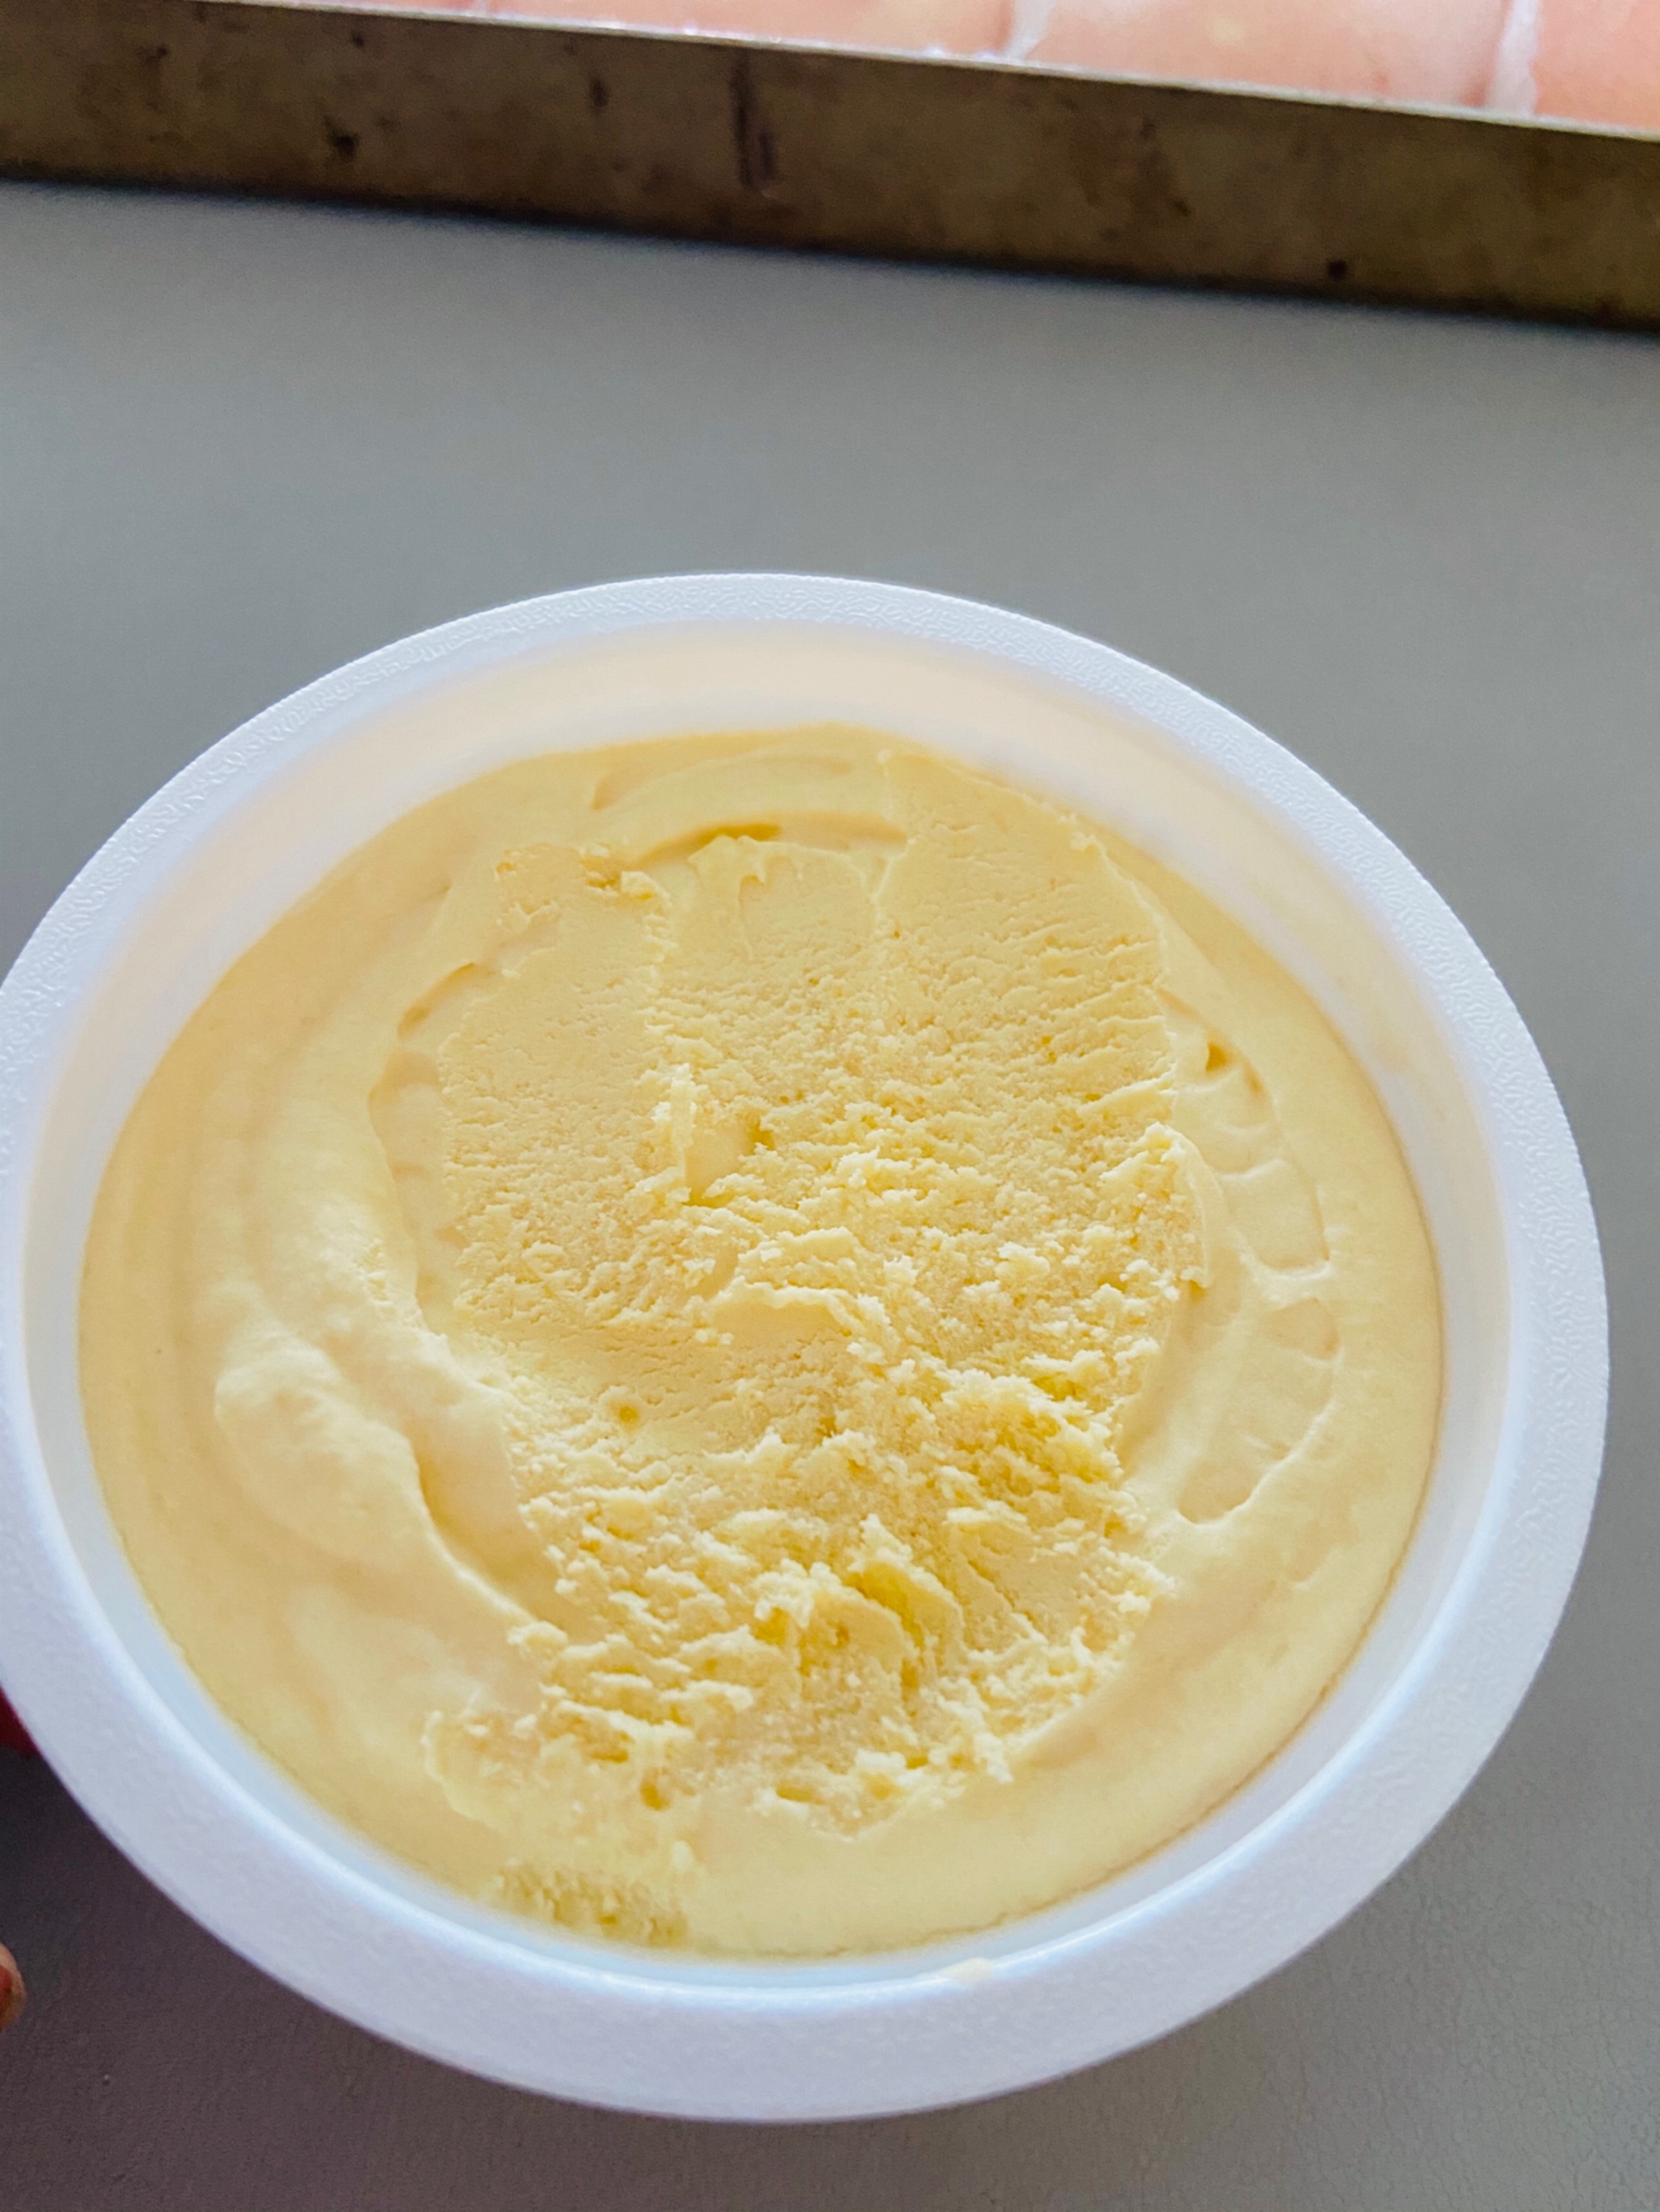 芒果冰淇淋的做法_【图解】芒果冰淇淋怎么做如何做好吃_芒果冰淇淋家常做法大全_80后妈妈菜_豆果美食